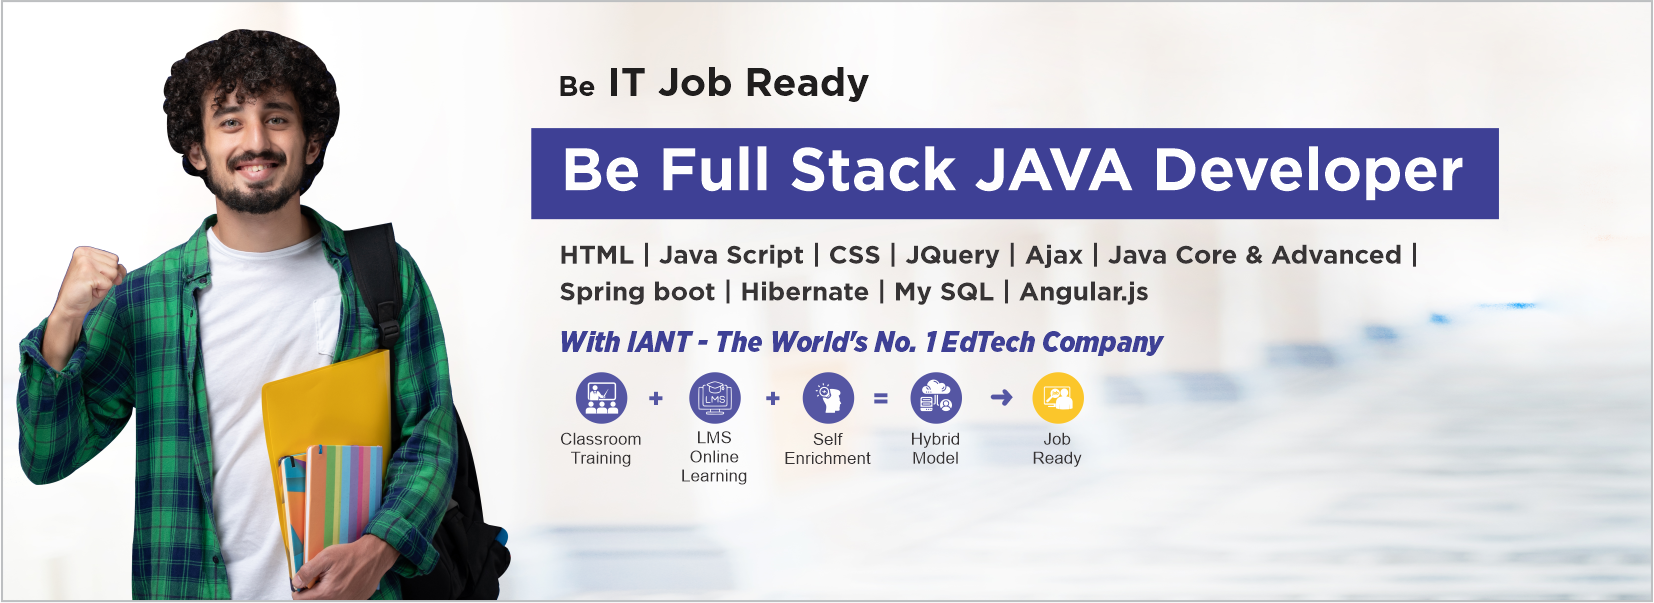 Full Stack Java Developer